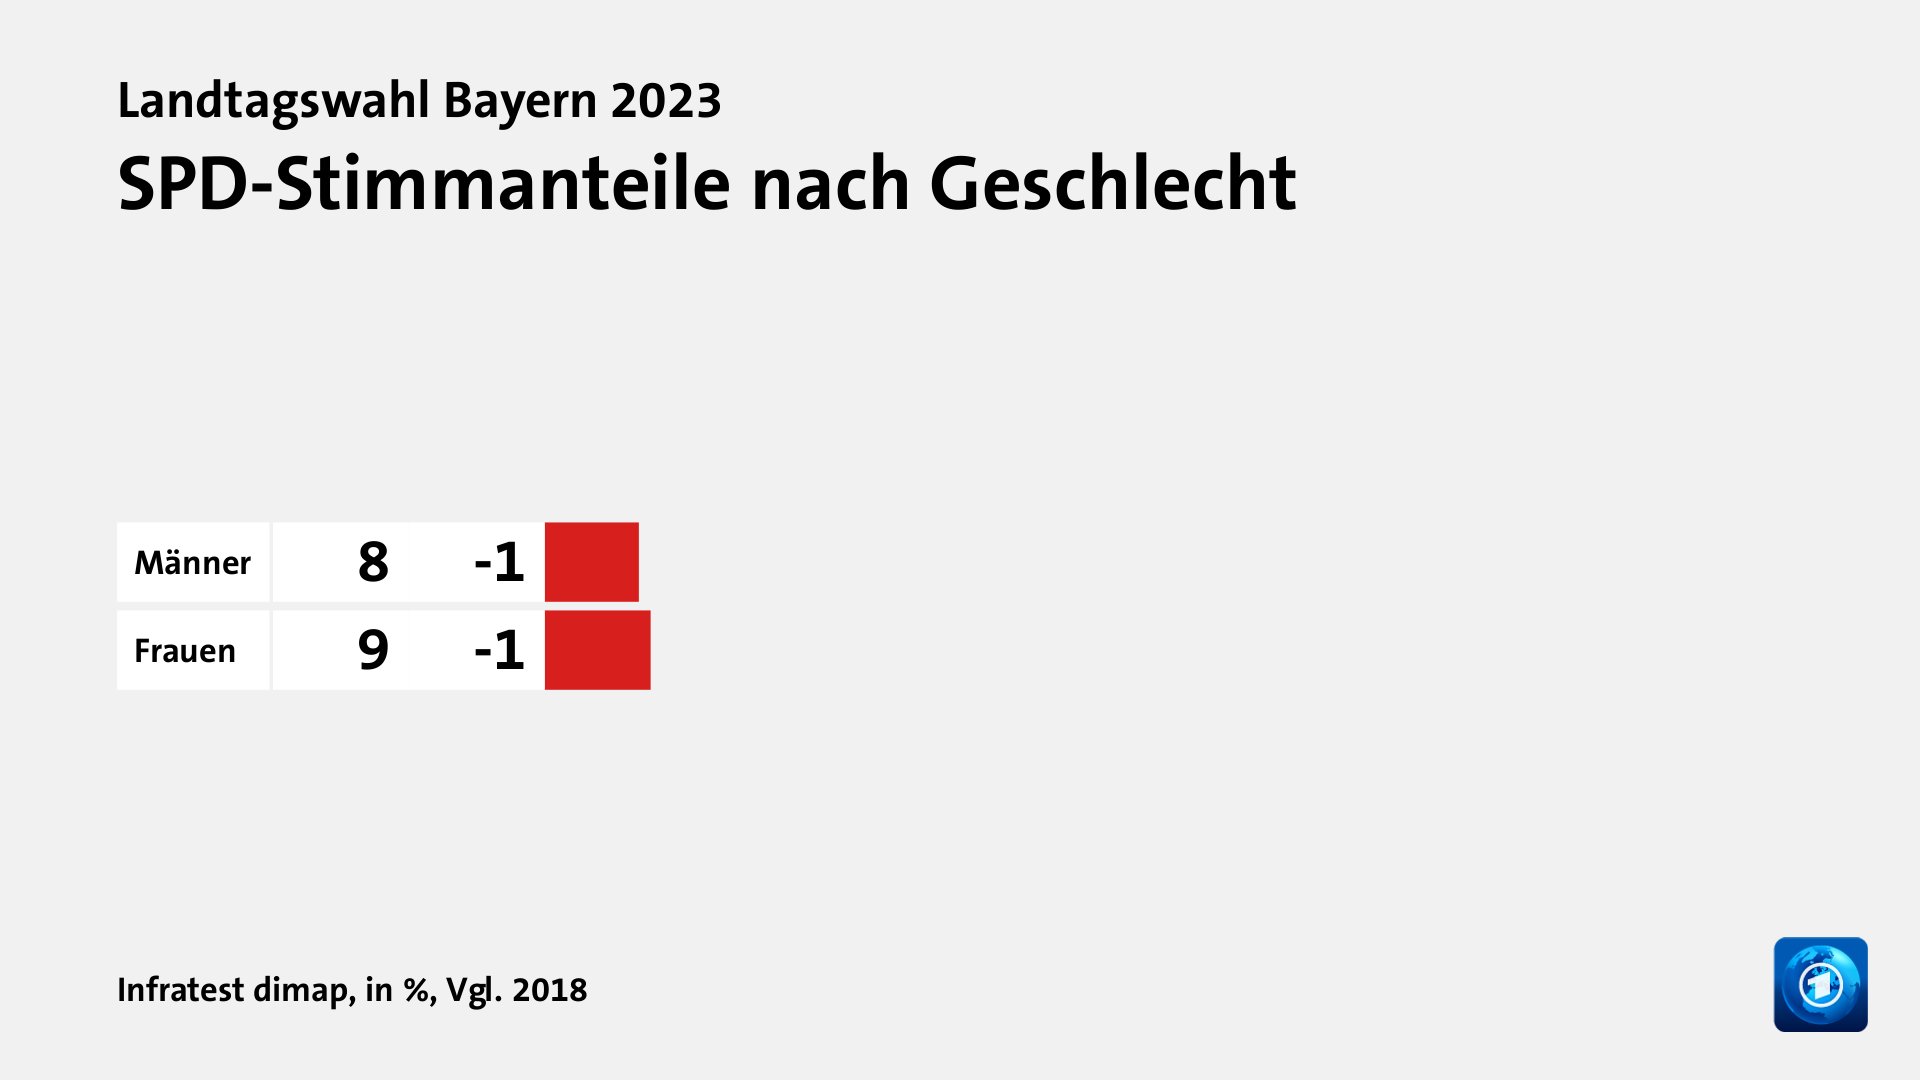 SPD-Stimmanteile nach Geschlecht, in %, Vgl. 2018: Männer 8, Frauen 9, Quelle: Infratest dimap